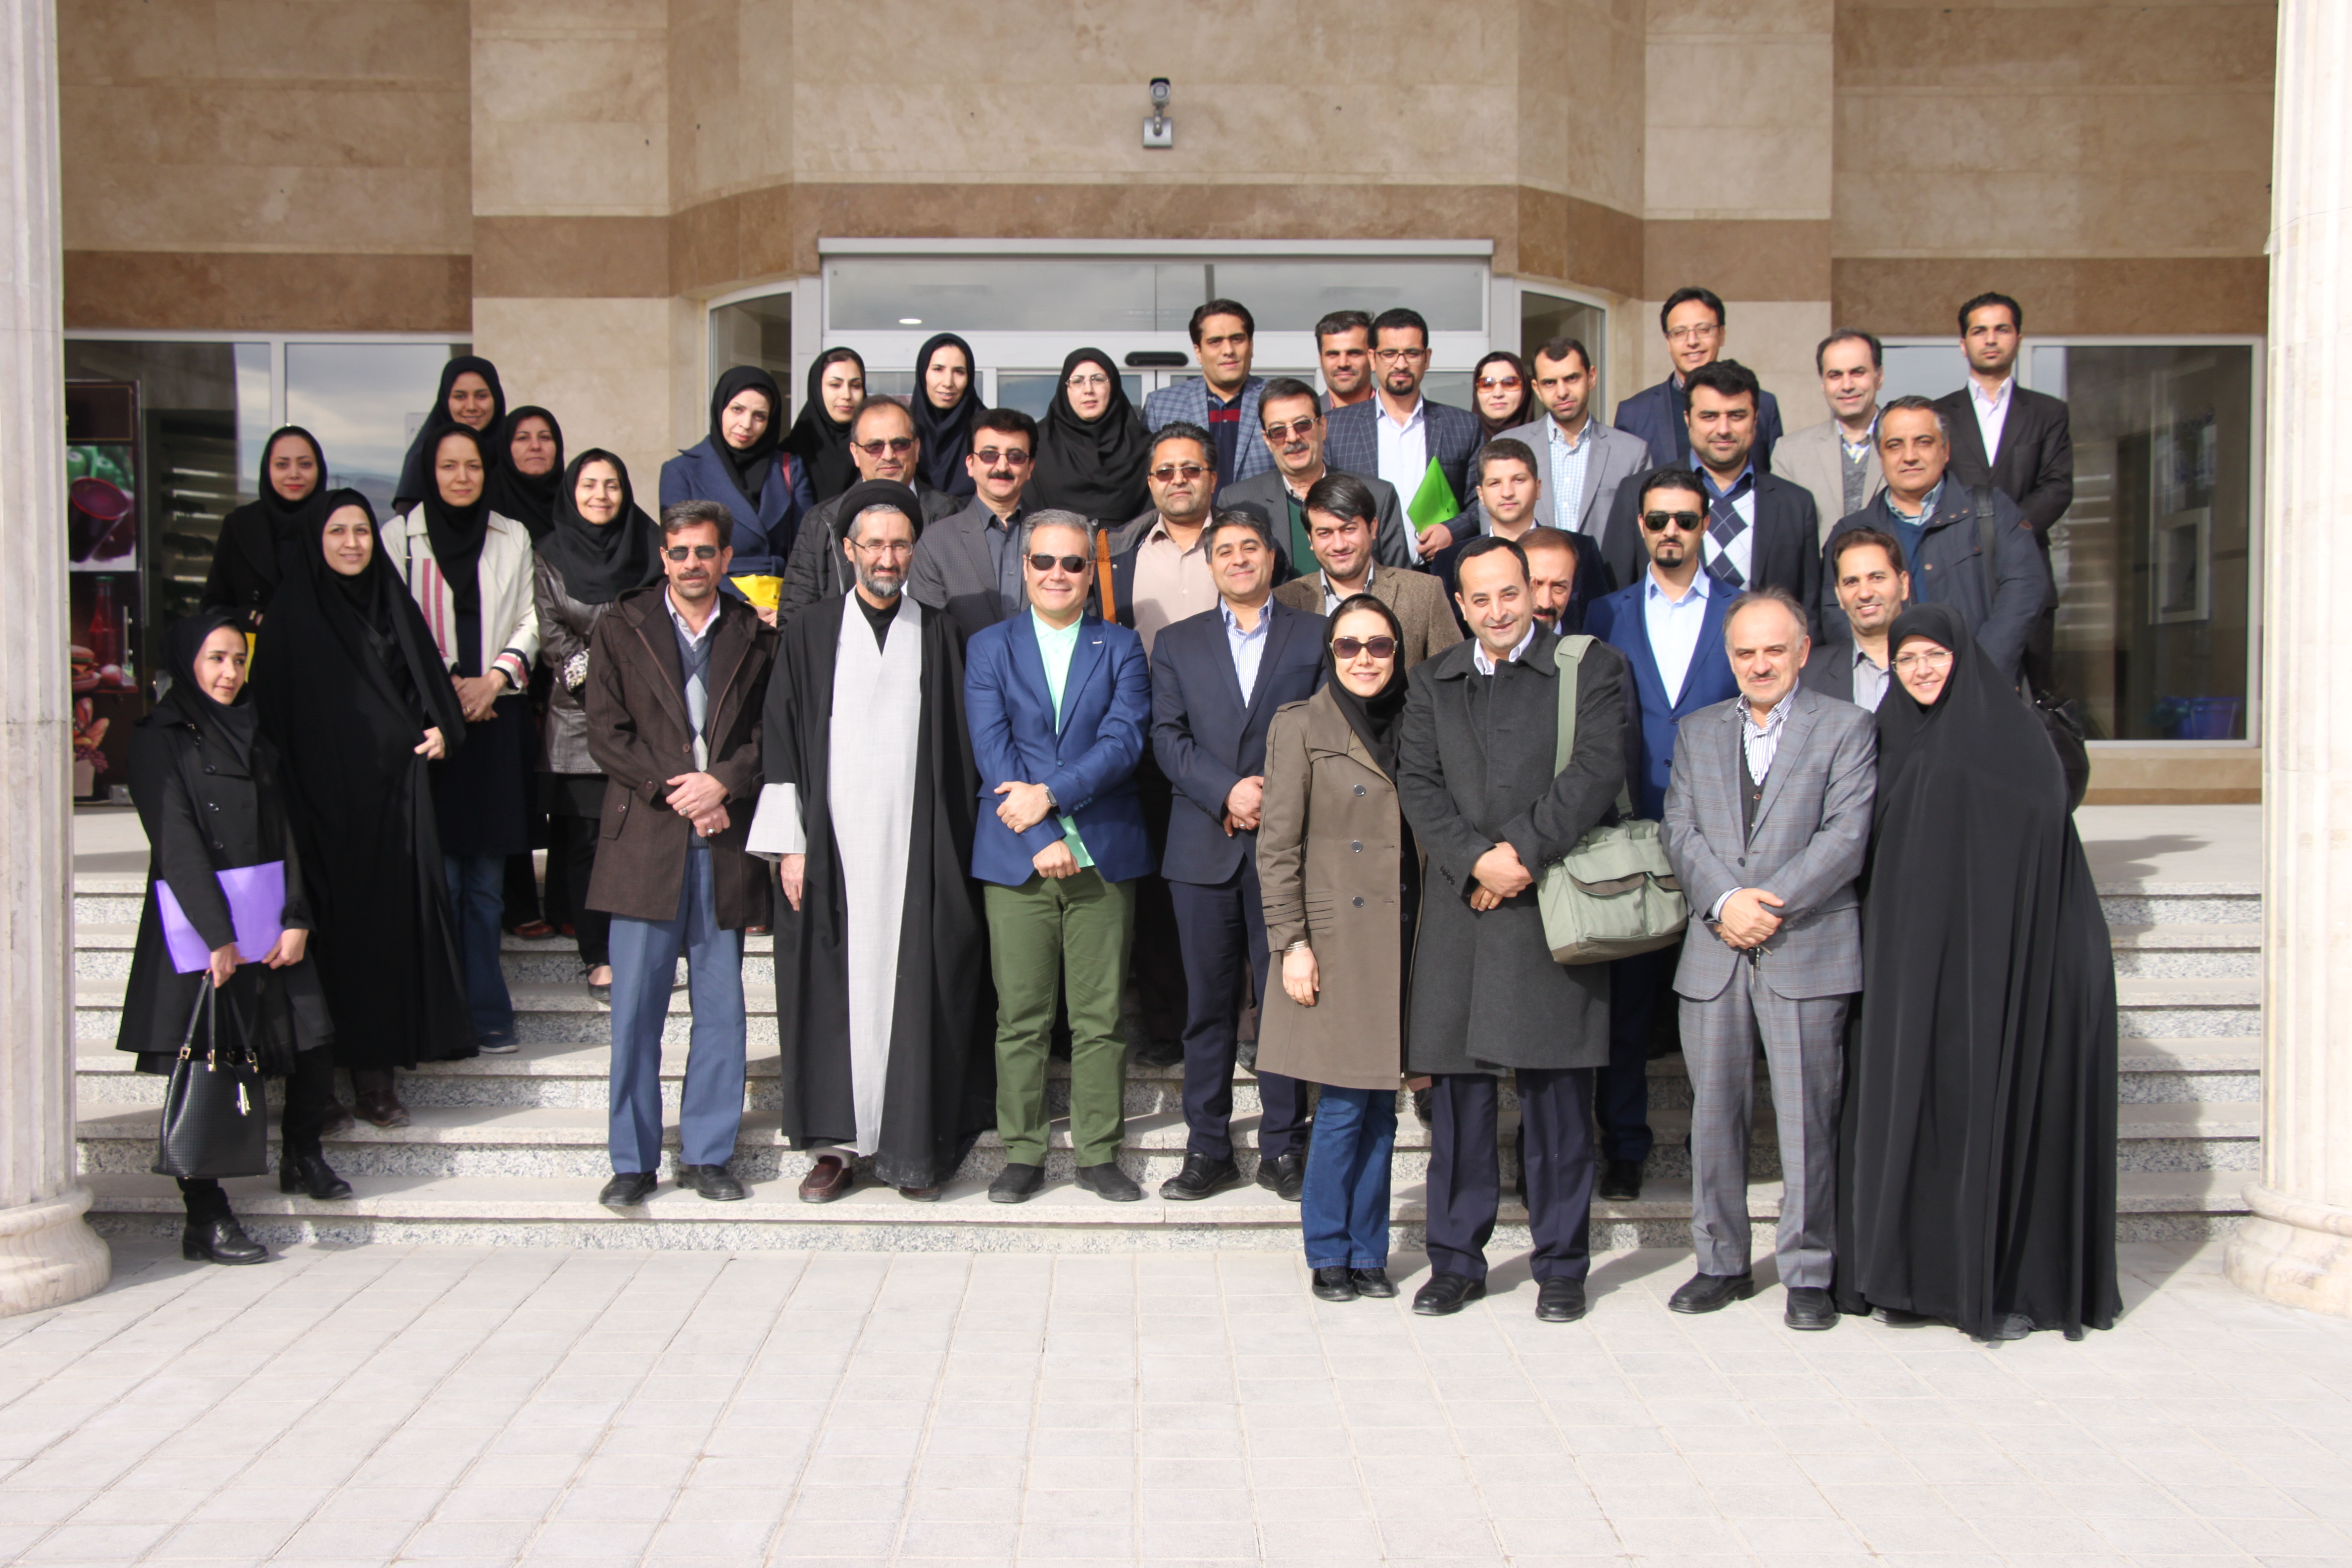 دوره آموزشی با موضوعات آموزش علوم پزشکی ویژه اعضای هیات علمی با حضور اساتید مدعو از دانشگاه علوم پزشکی شیراز برگزار شد